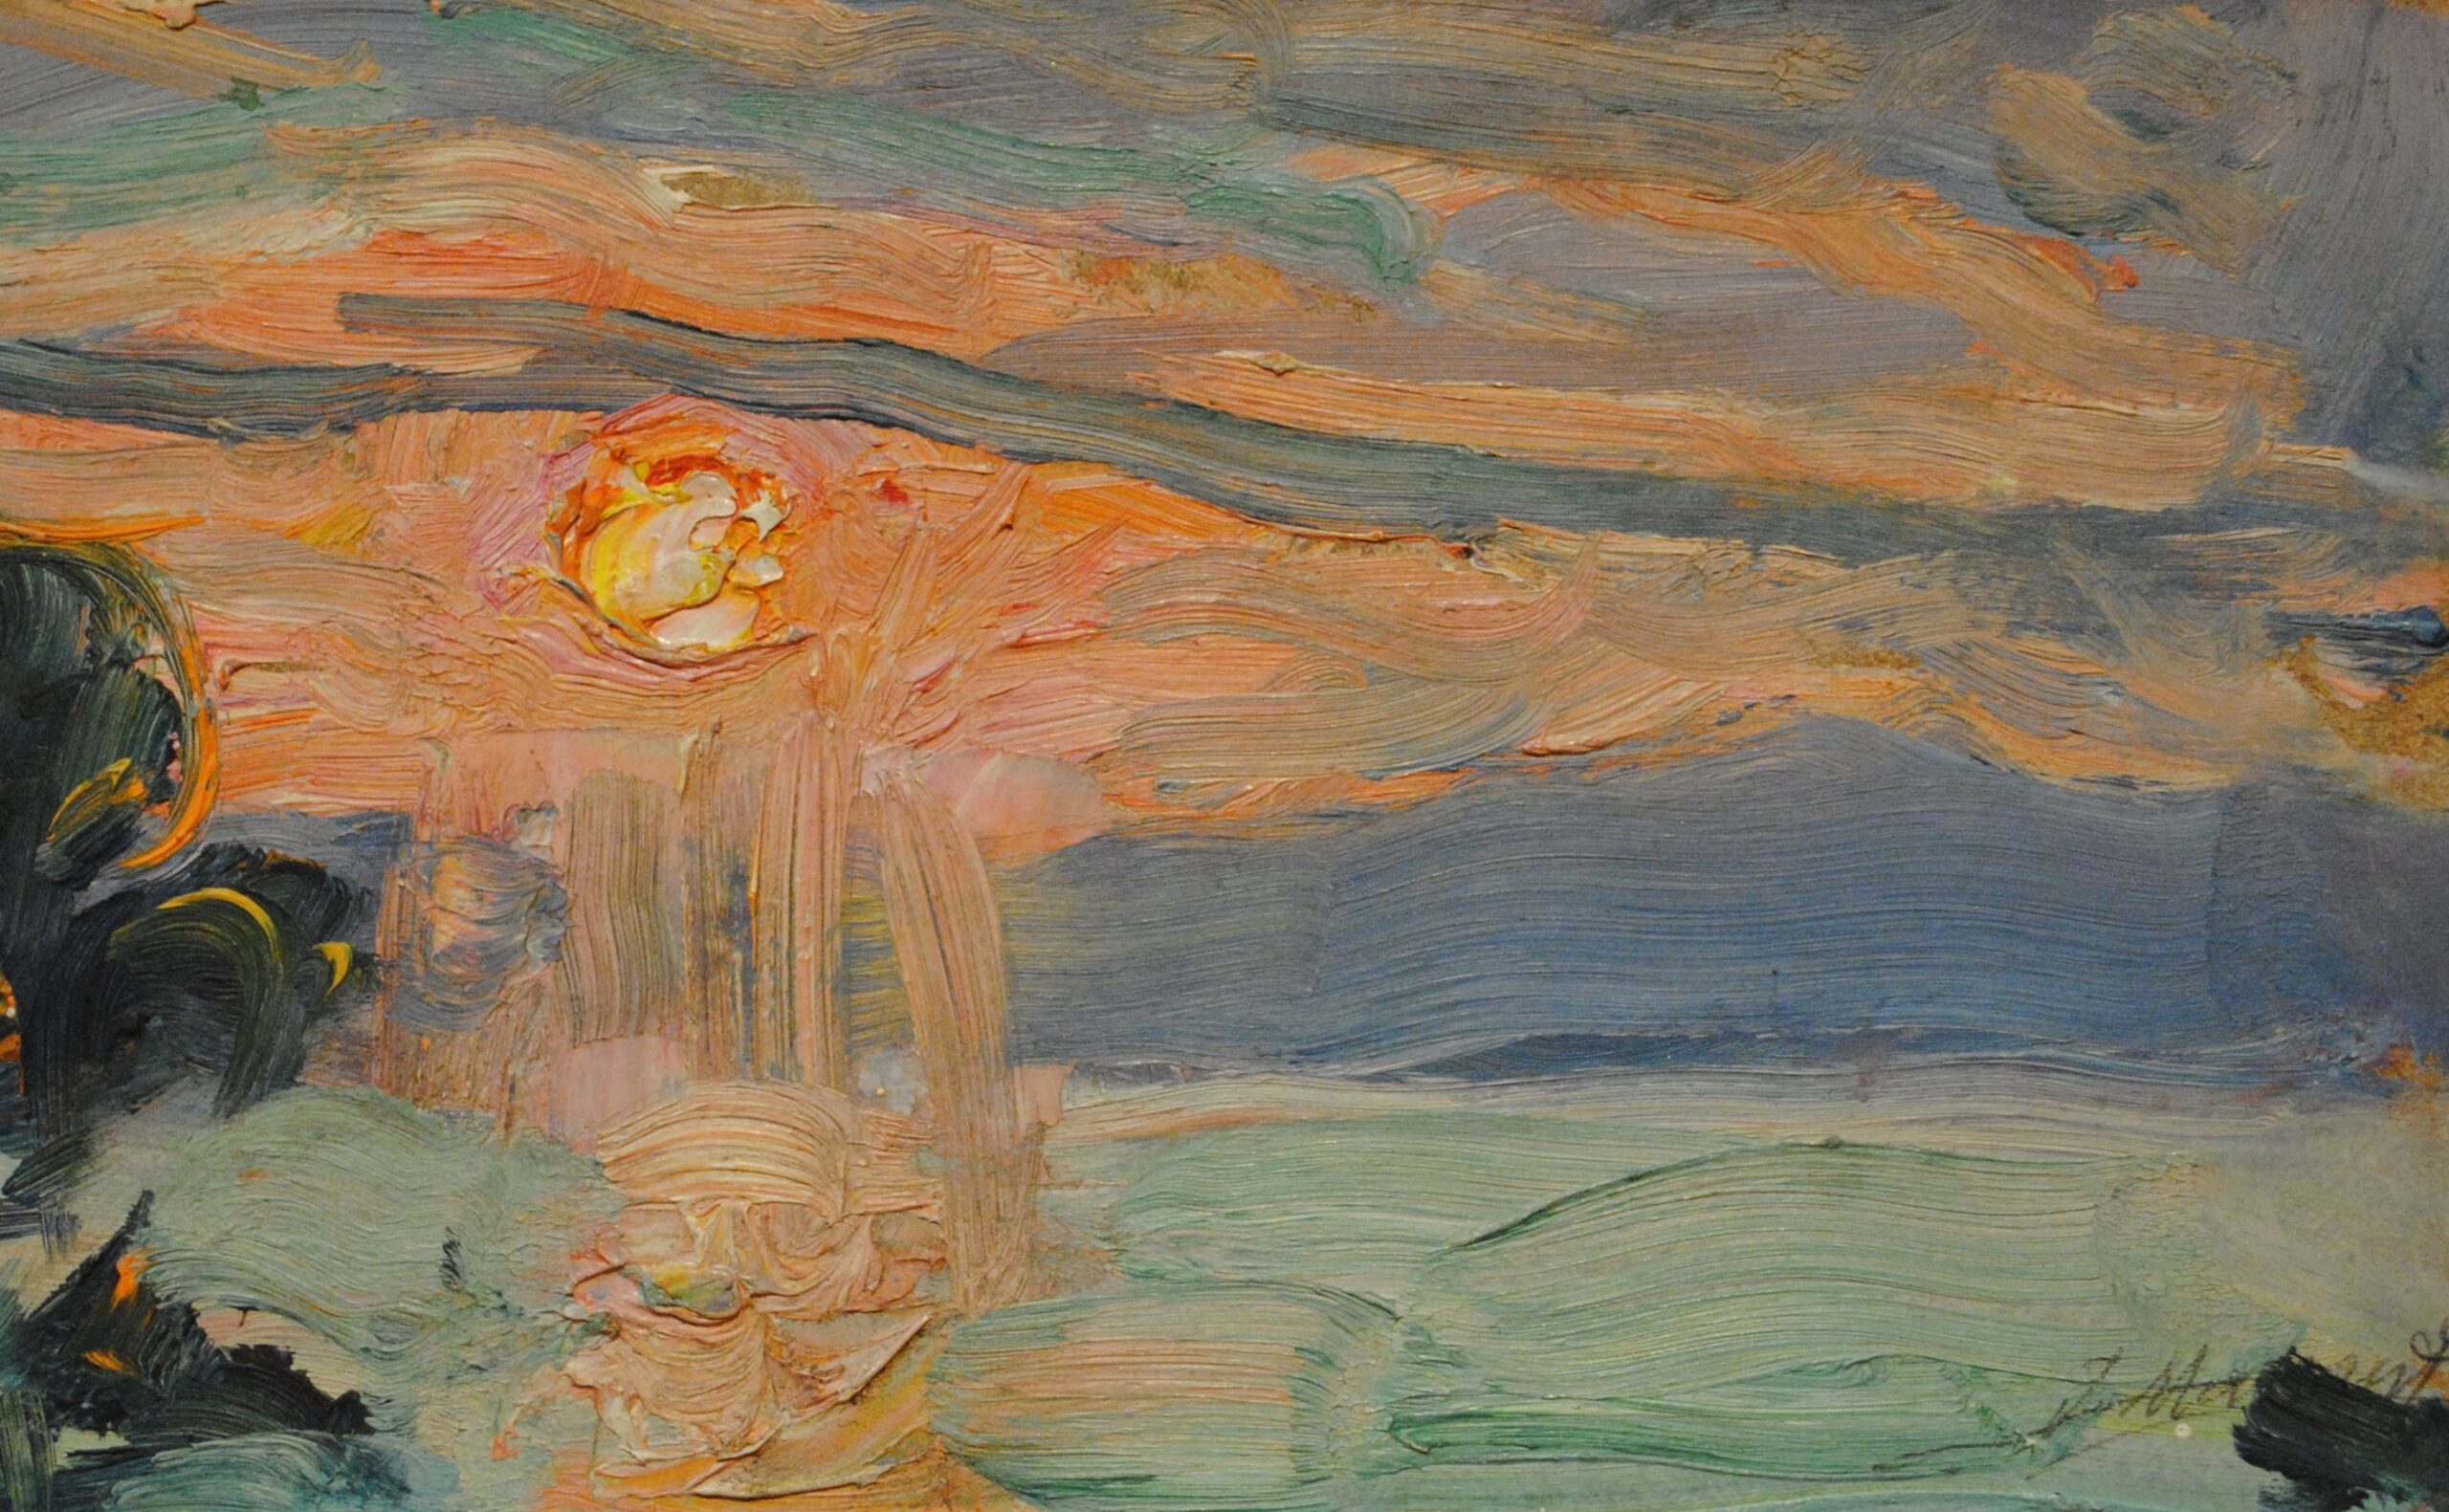 Pintura de José Manaut titulada Puesta de sol, 1960 aprox. Óleo sobre tabla.